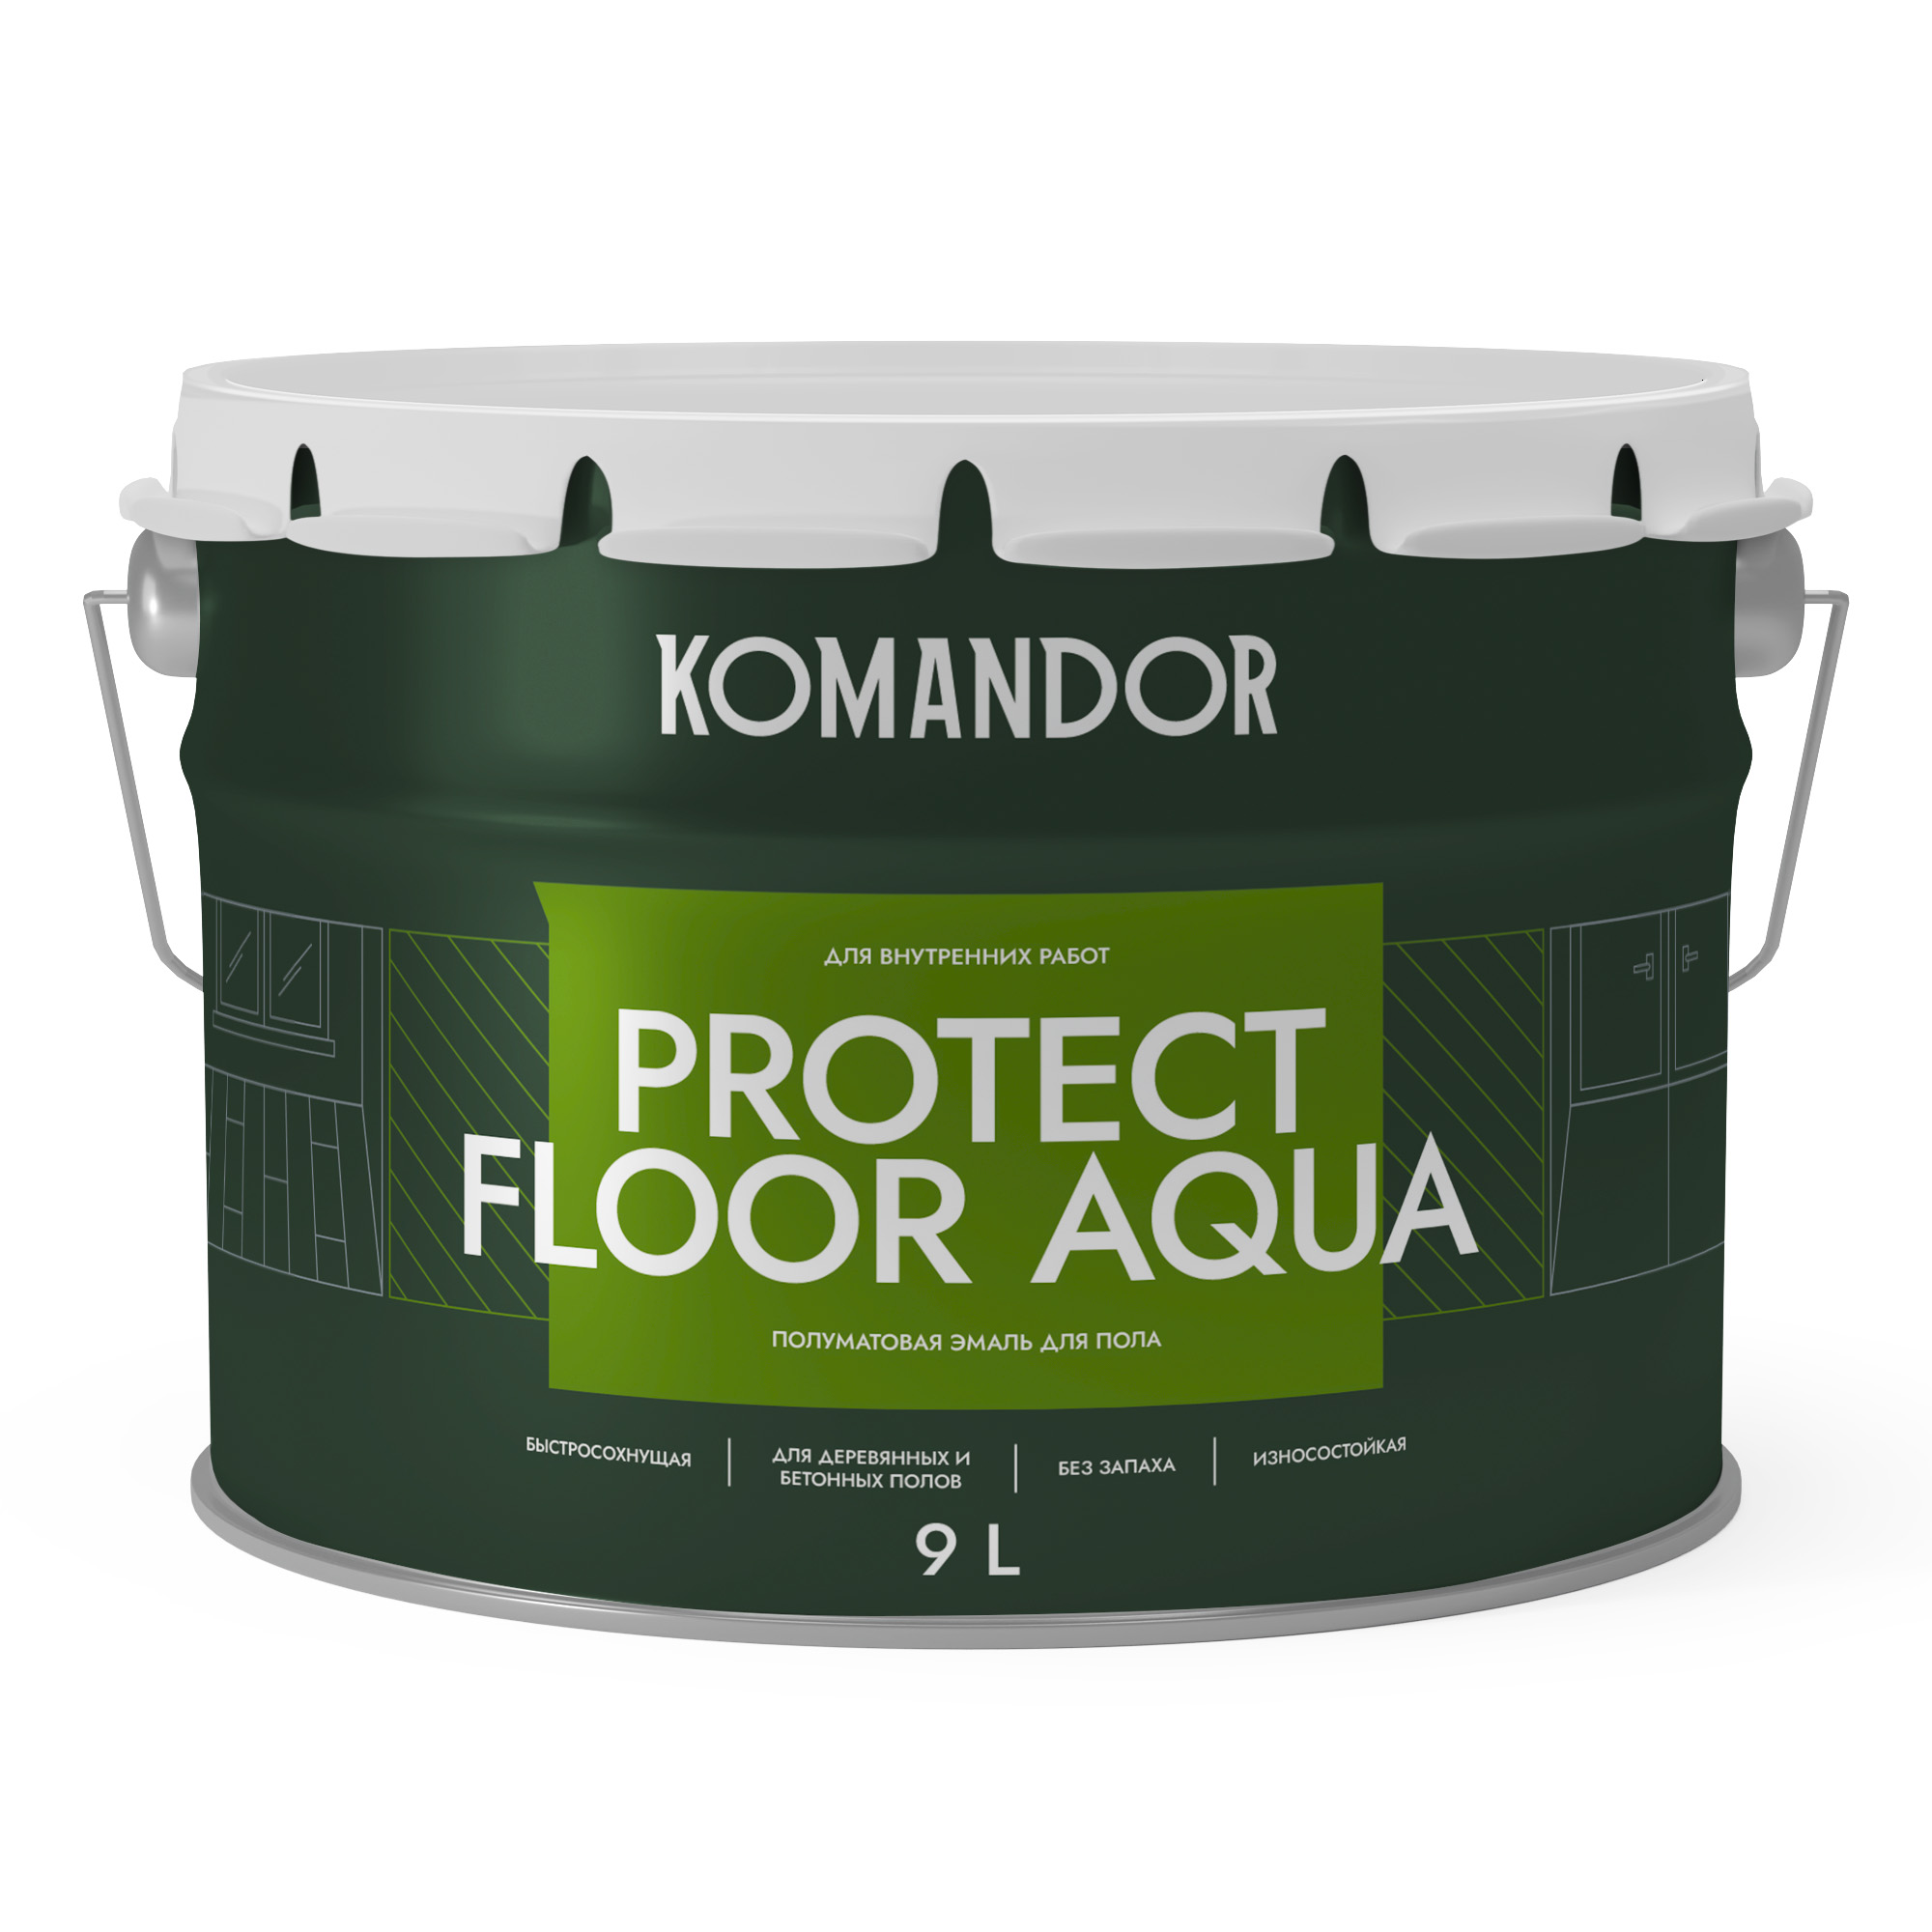 Эмаль для пола и лестниц Komandor Protect Floor Aqua A S1314001010 полуматовая 9 л - фото 1